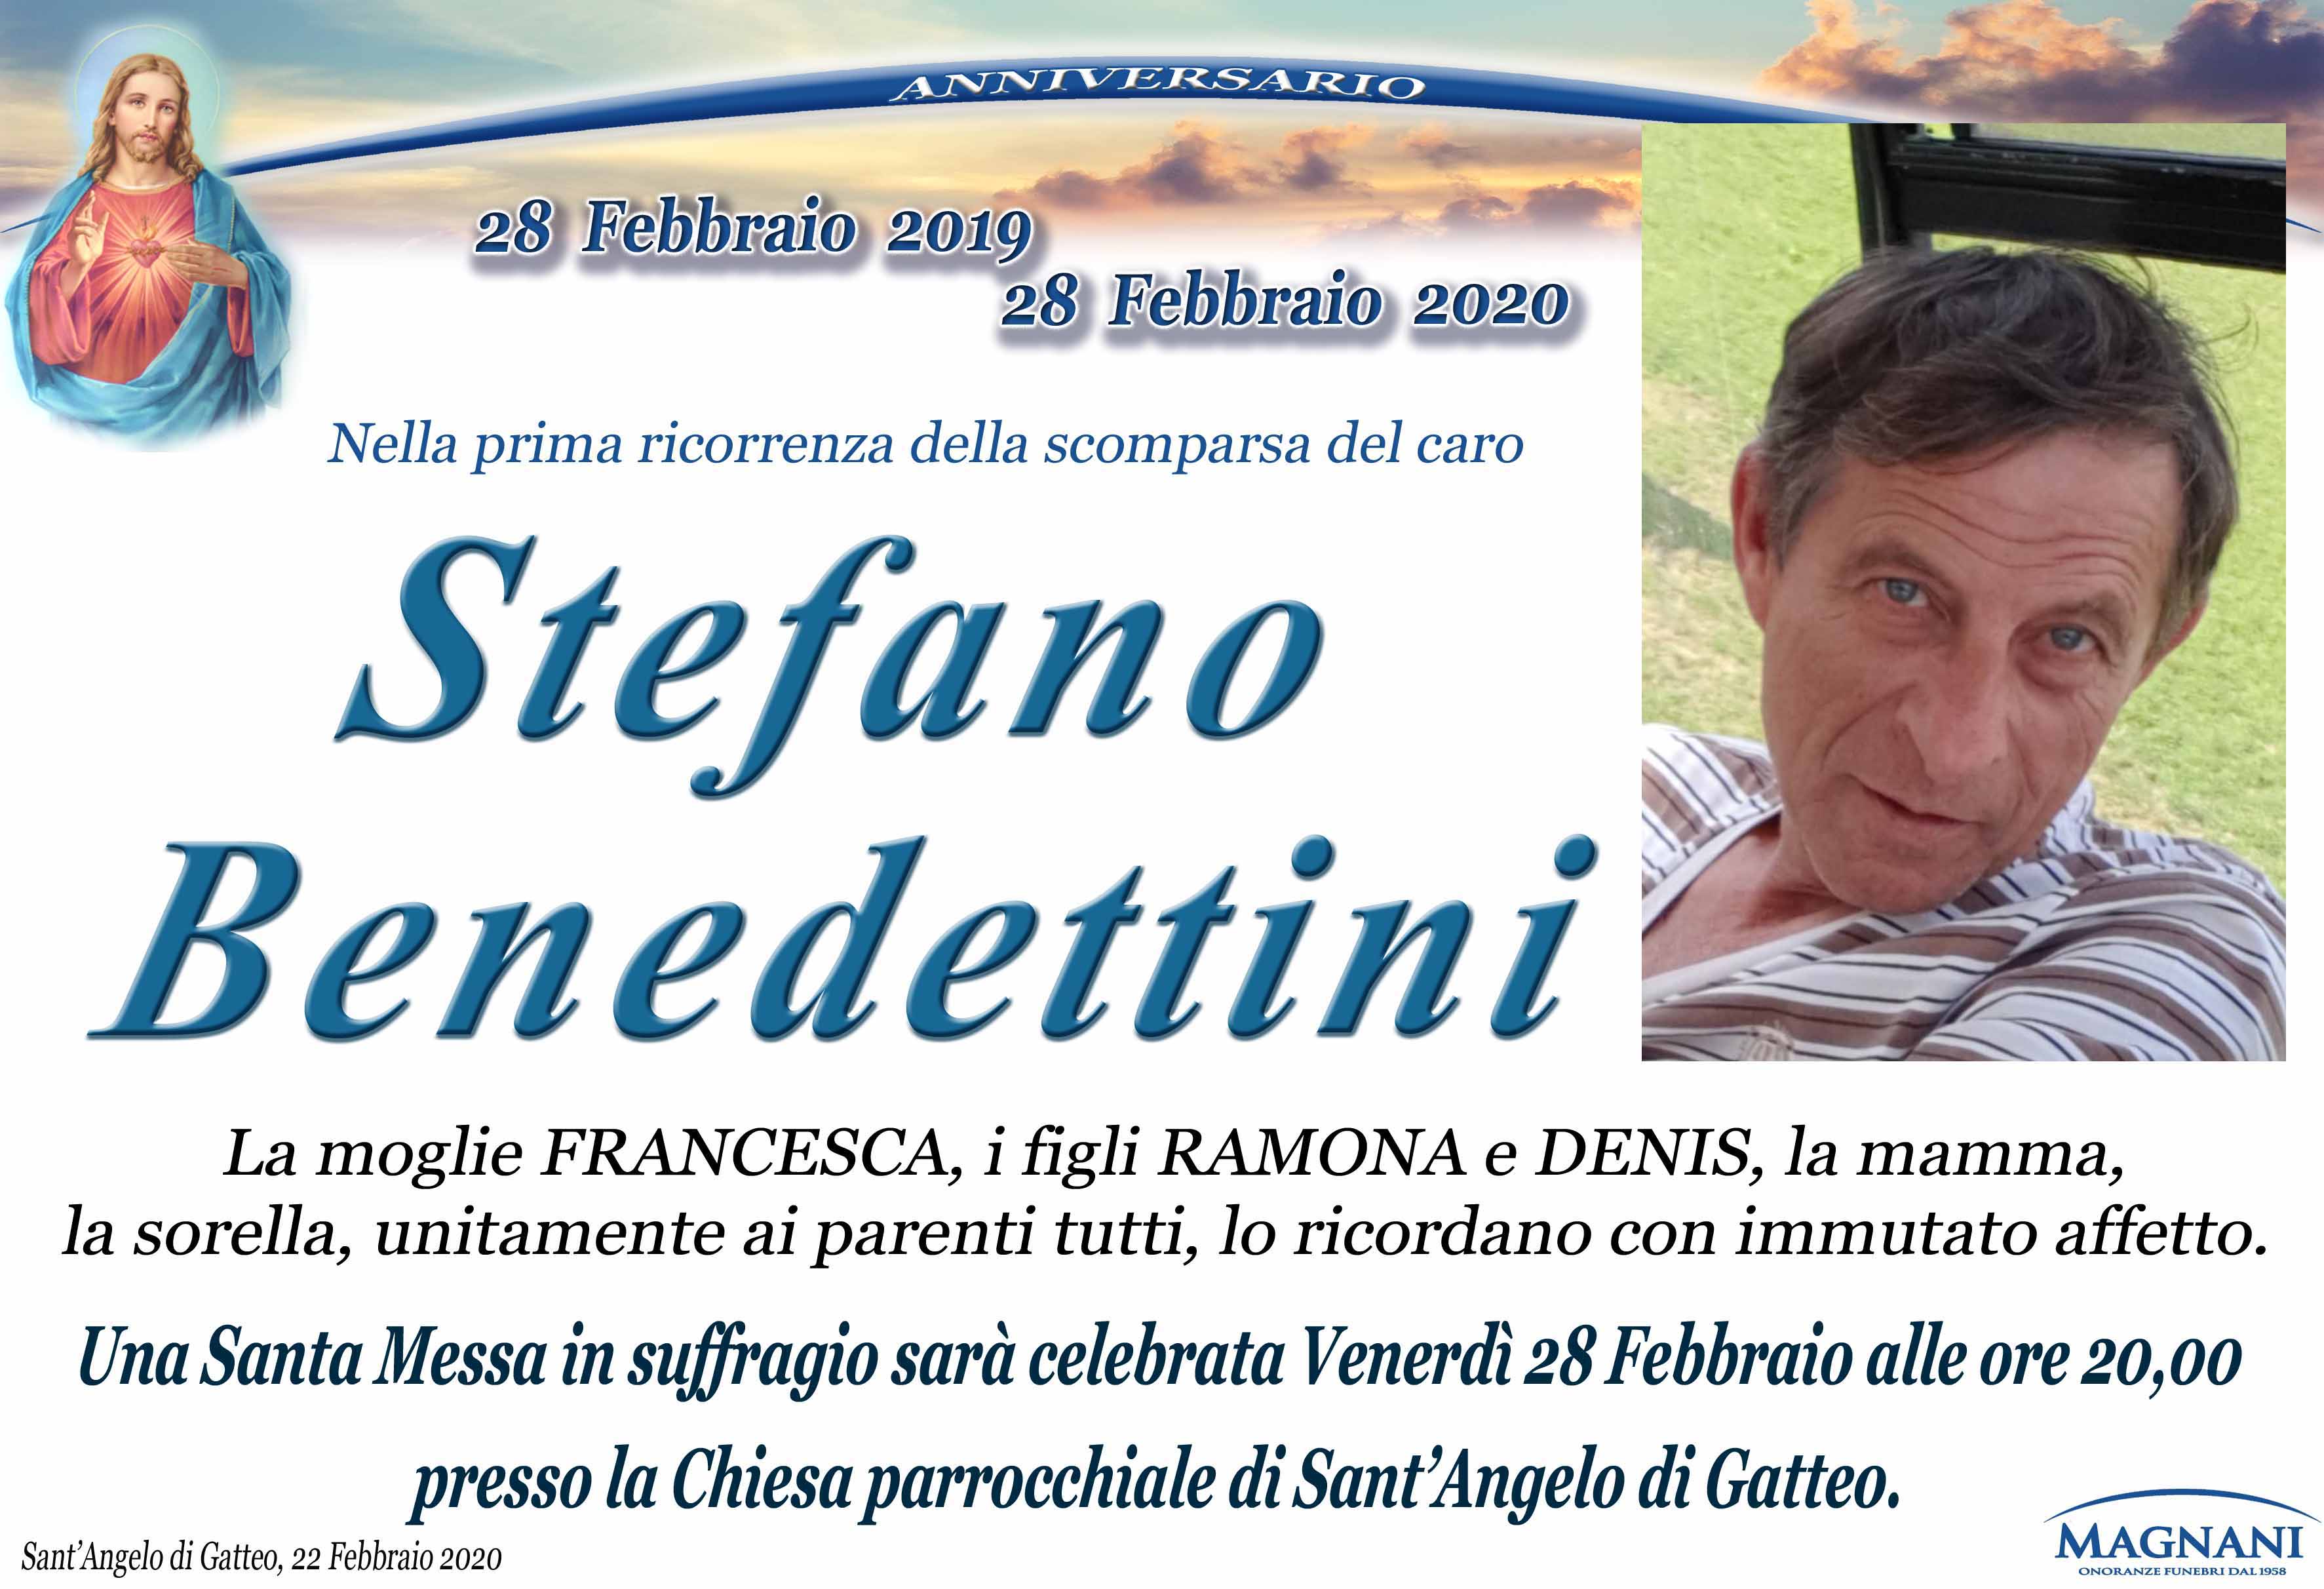 Stefano Benedettini